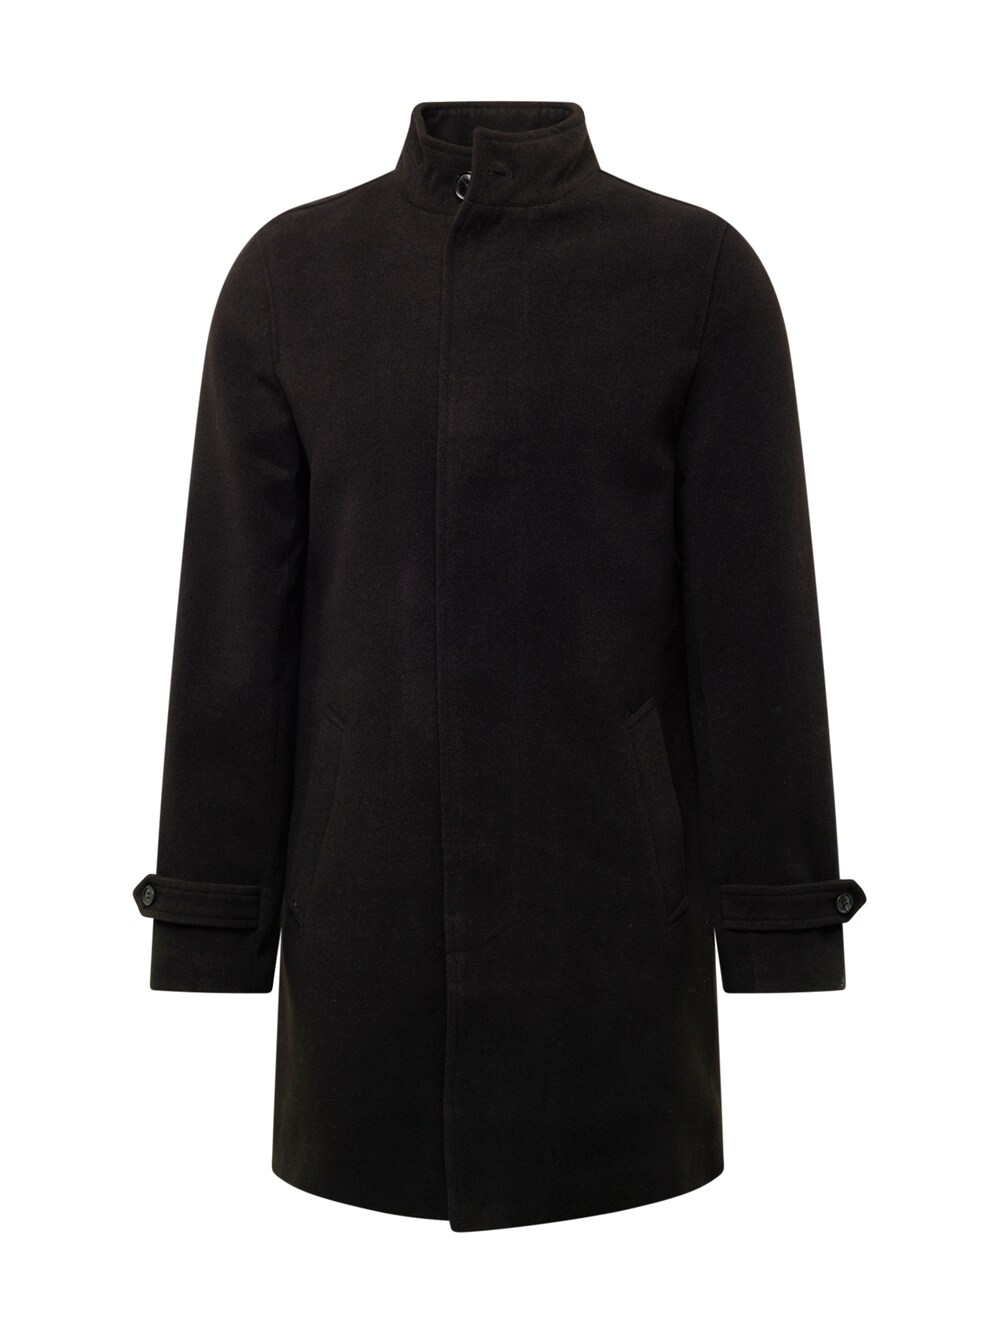 Межсезонное пальто BURTON MENSWEAR LONDON Funnel, черный набор burton abckl mounting hardware черный 20